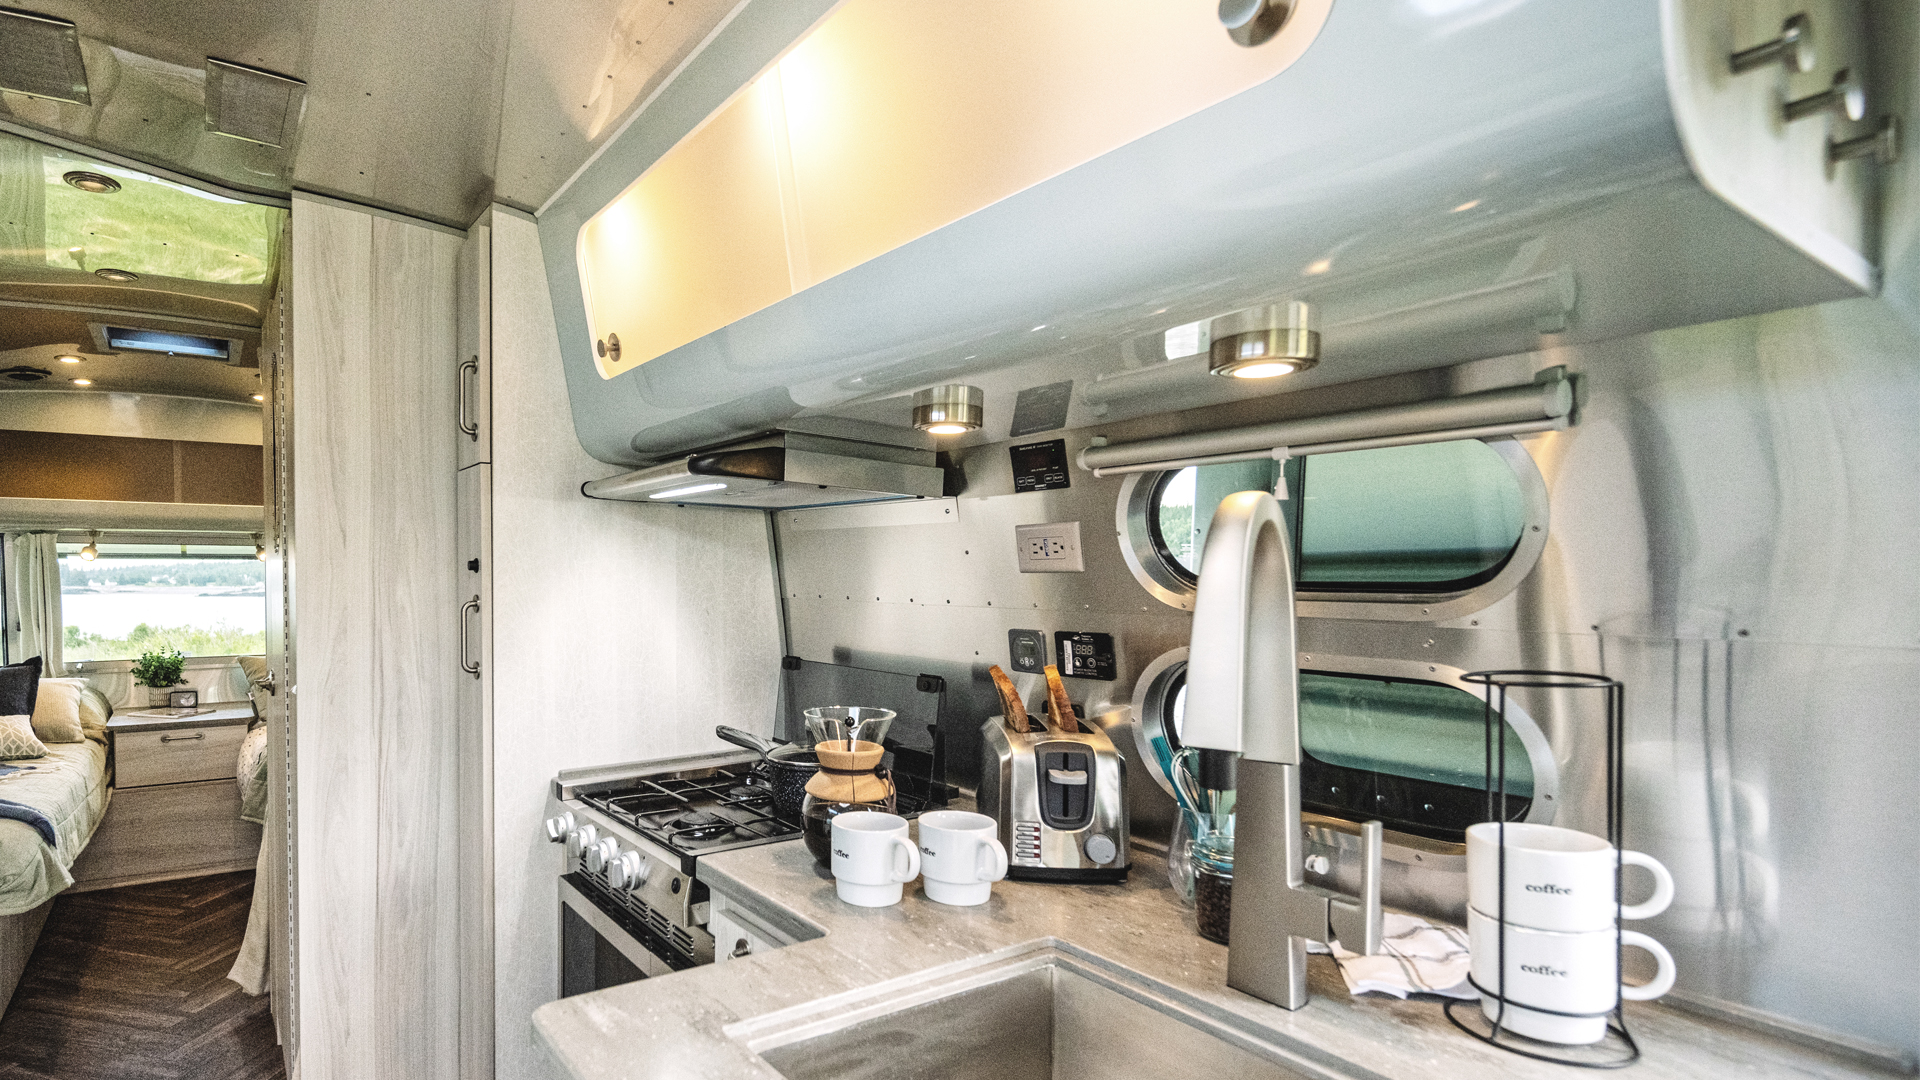 厨房的早餐食品和用品坐在空气国际旅行拖车的柜台上。